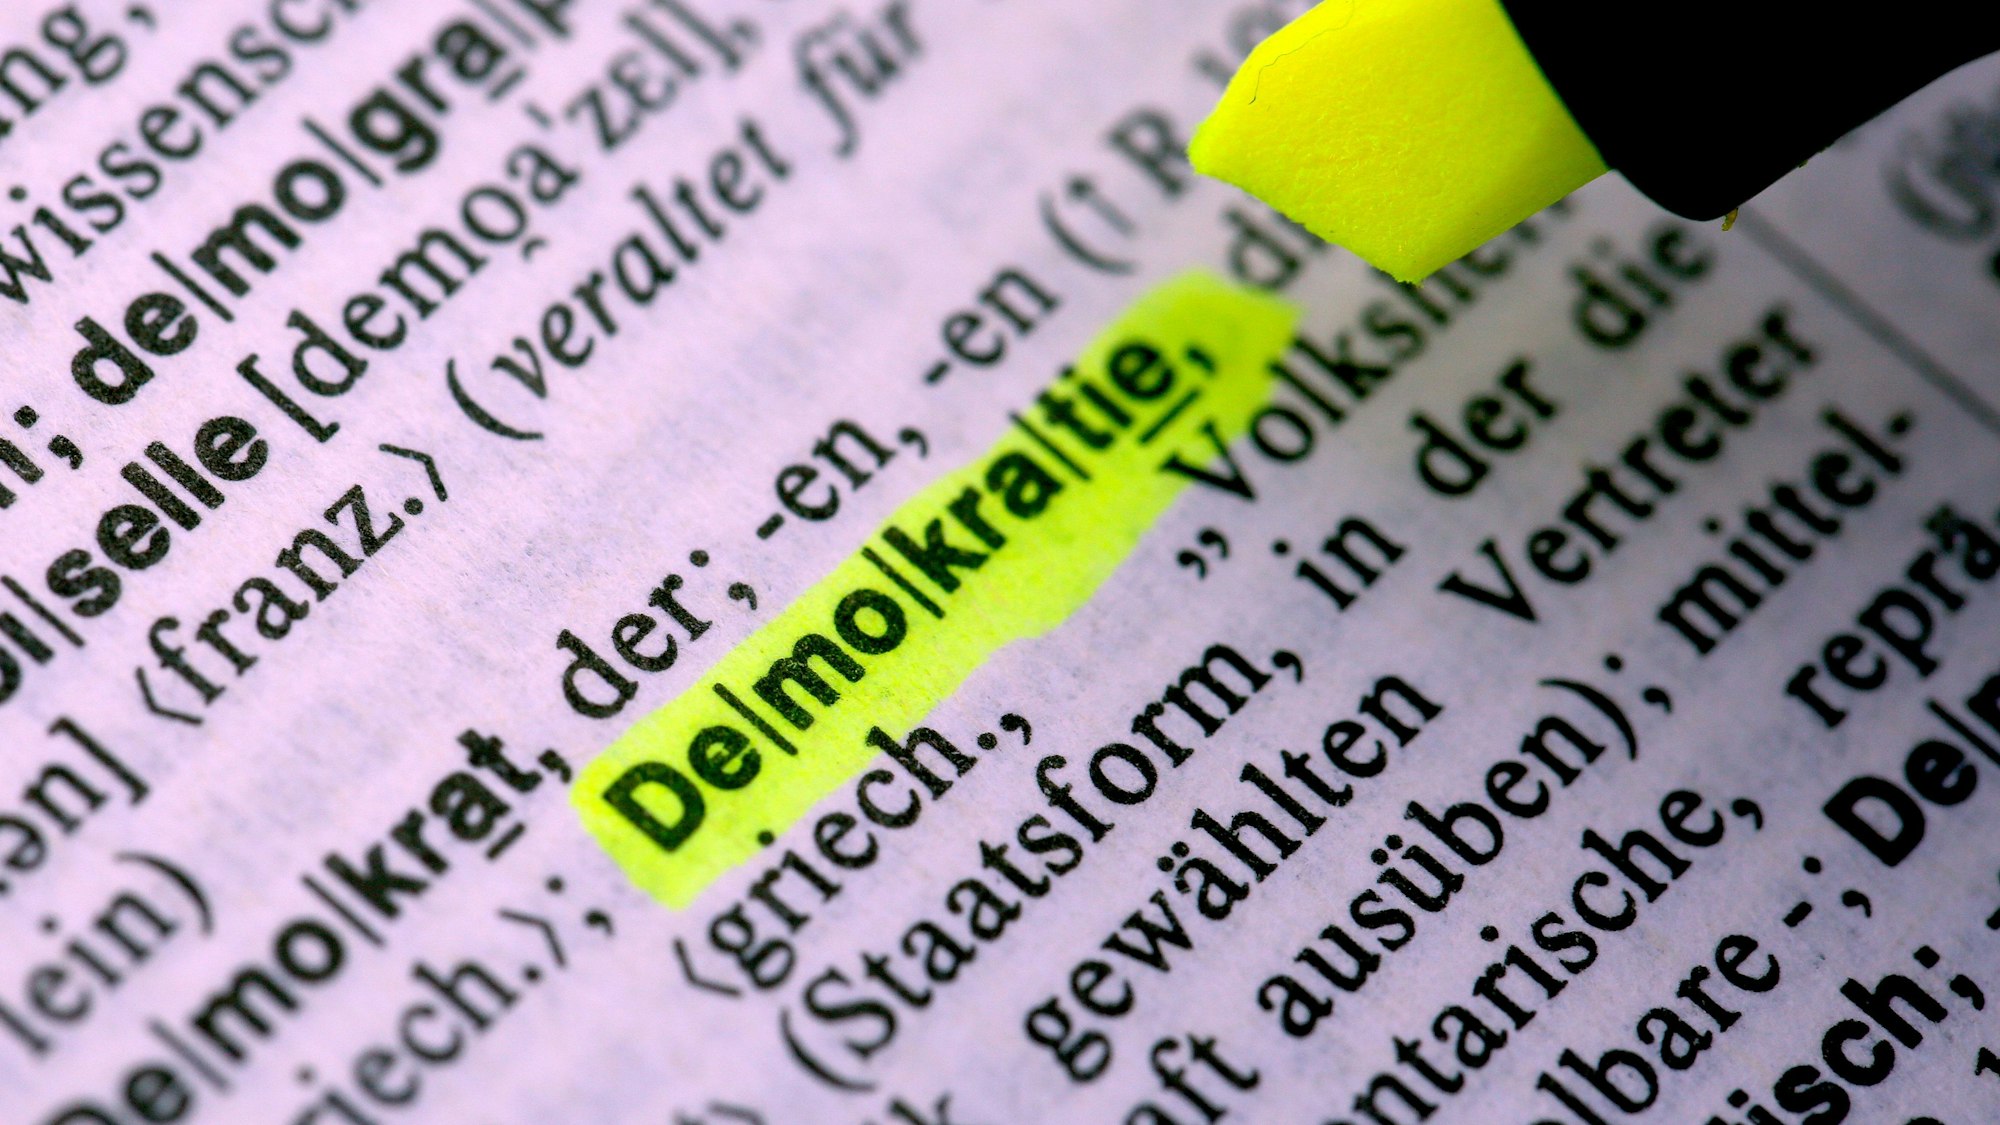 Das Wort „Demokratie“ wird in einem Duden mit einem gelben Textmarker markiert.